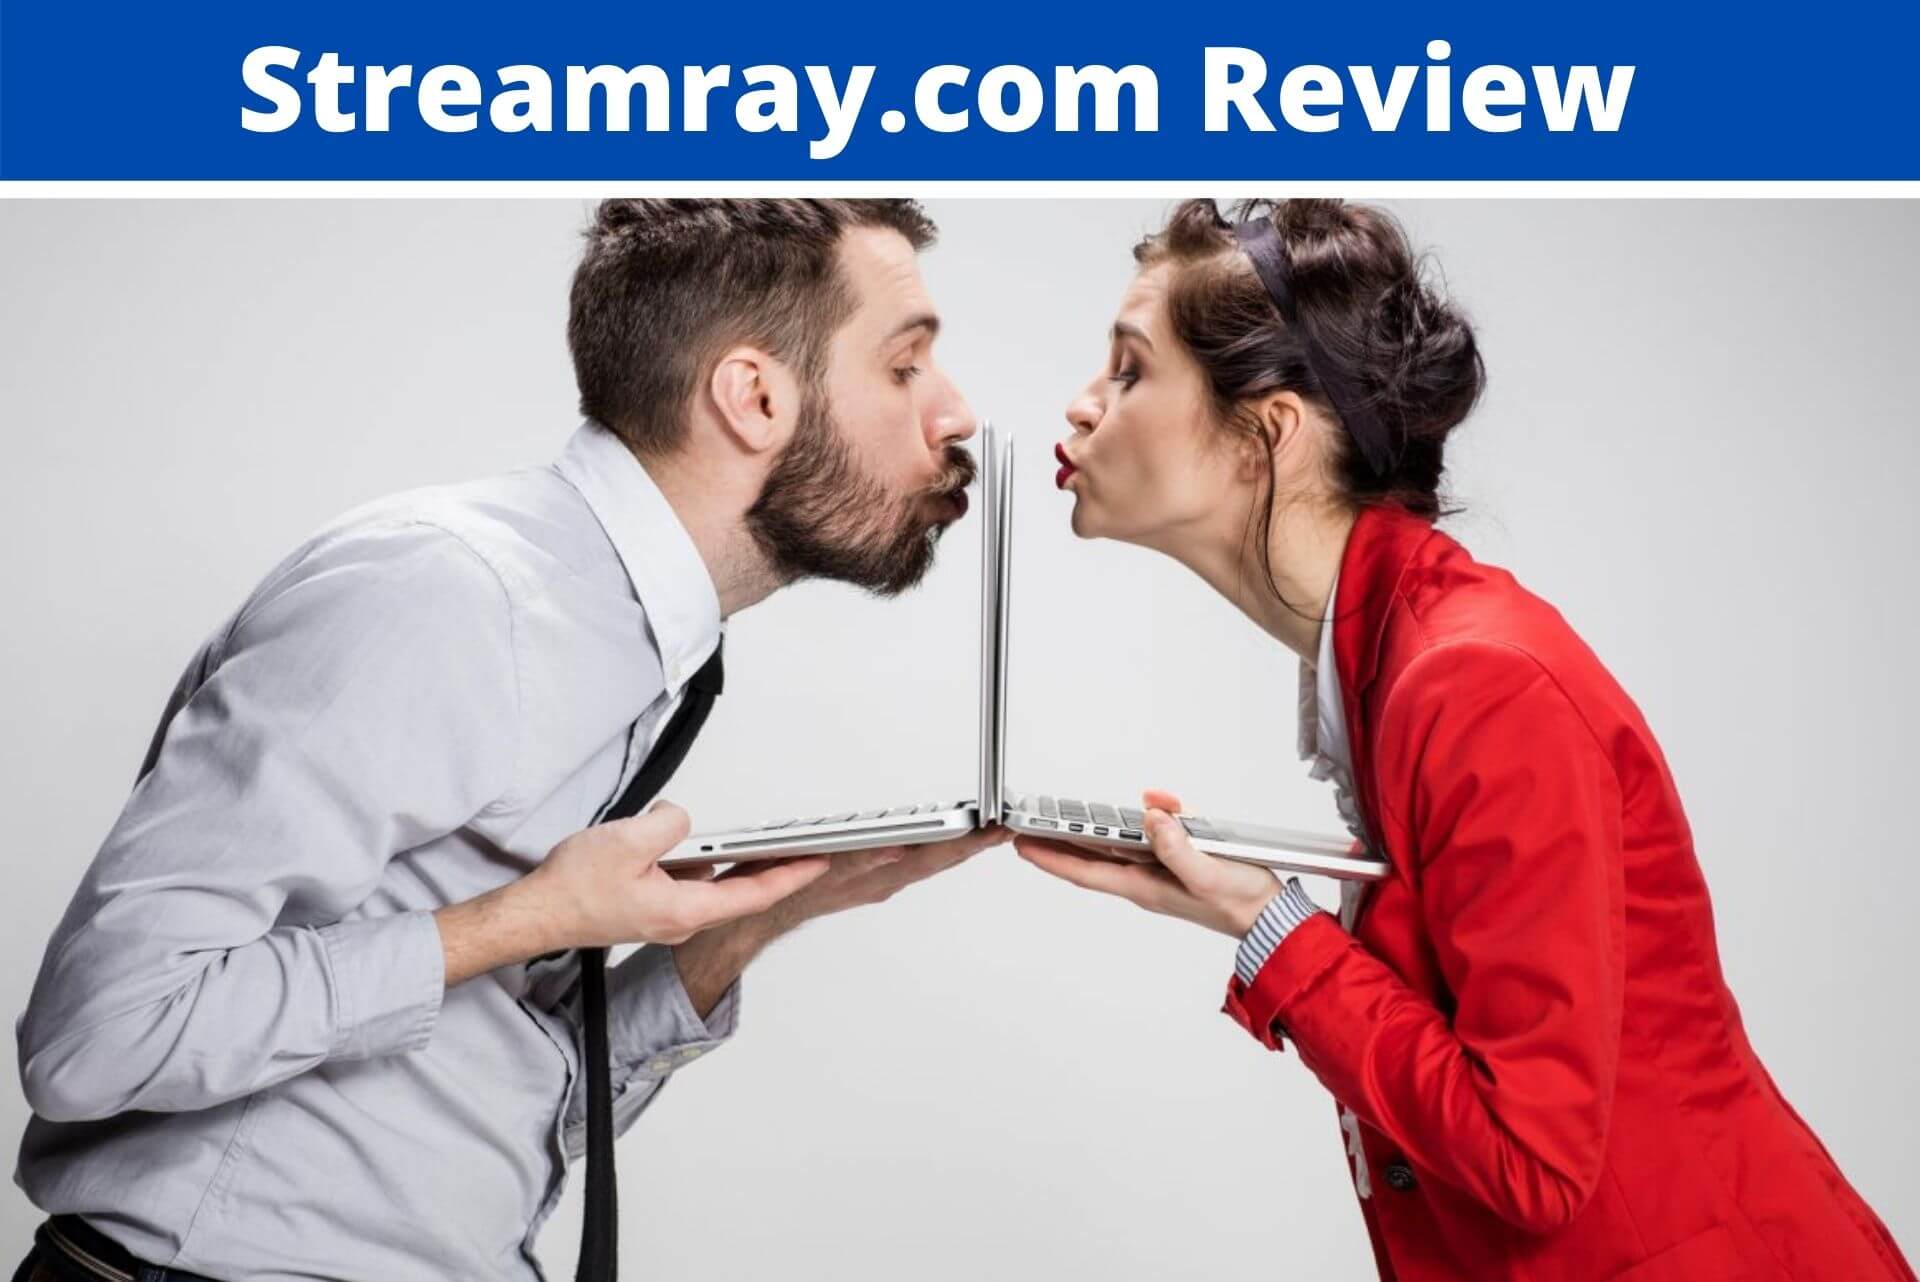 Streamray.com Review